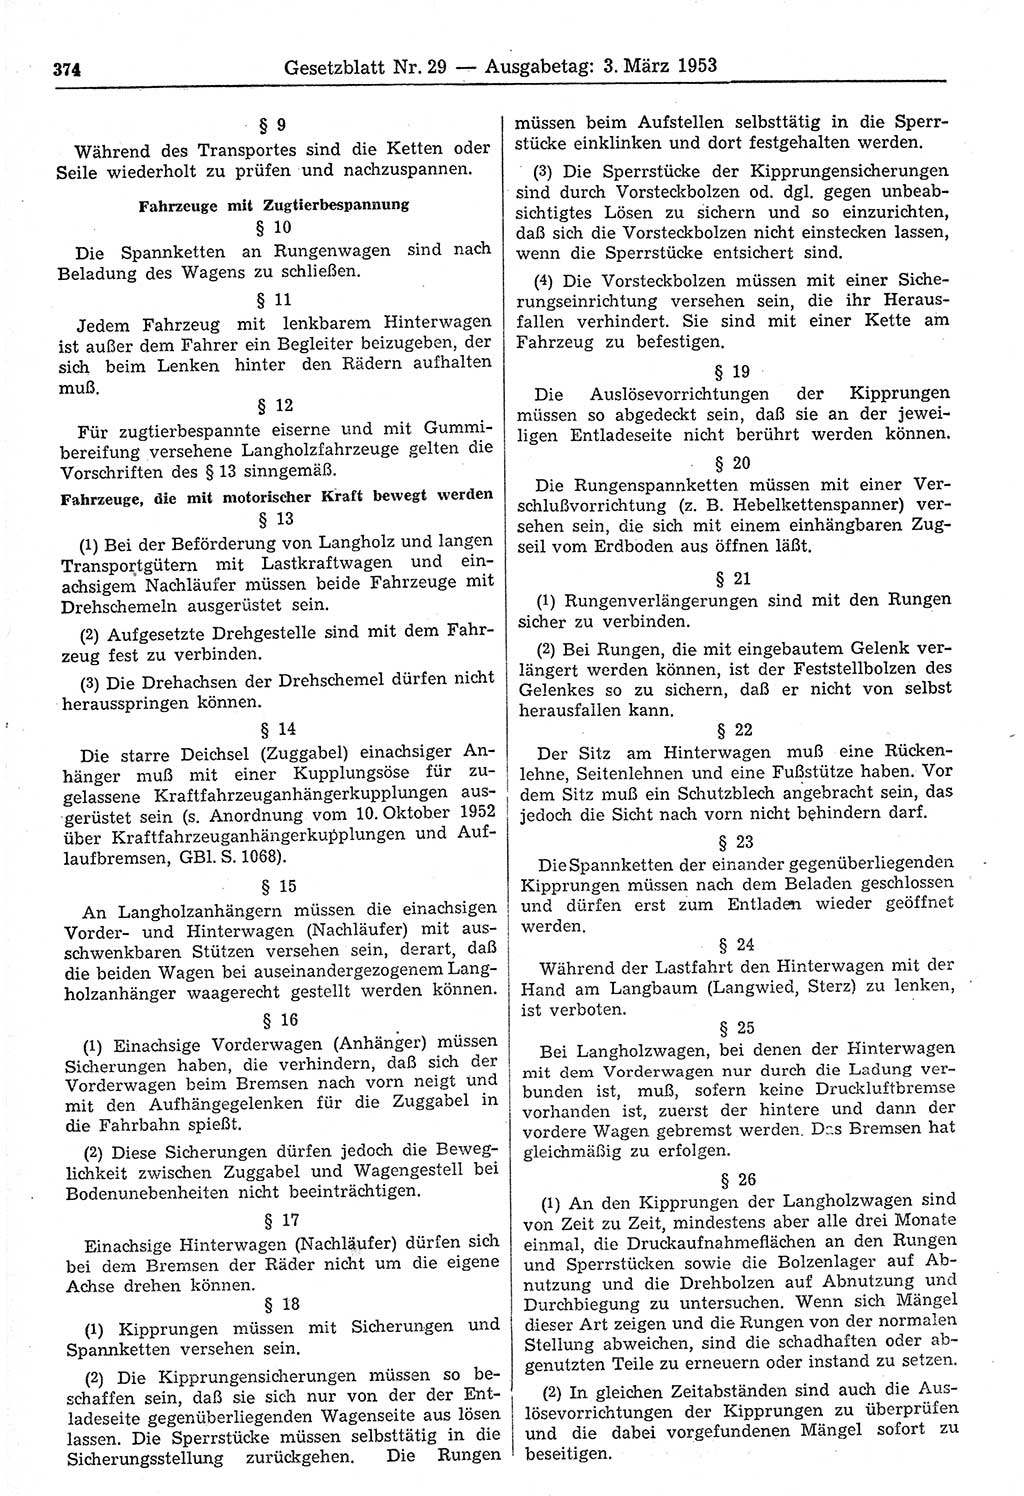 Gesetzblatt (GBl.) der Deutschen Demokratischen Republik (DDR) 1953, Seite 374 (GBl. DDR 1953, S. 374)